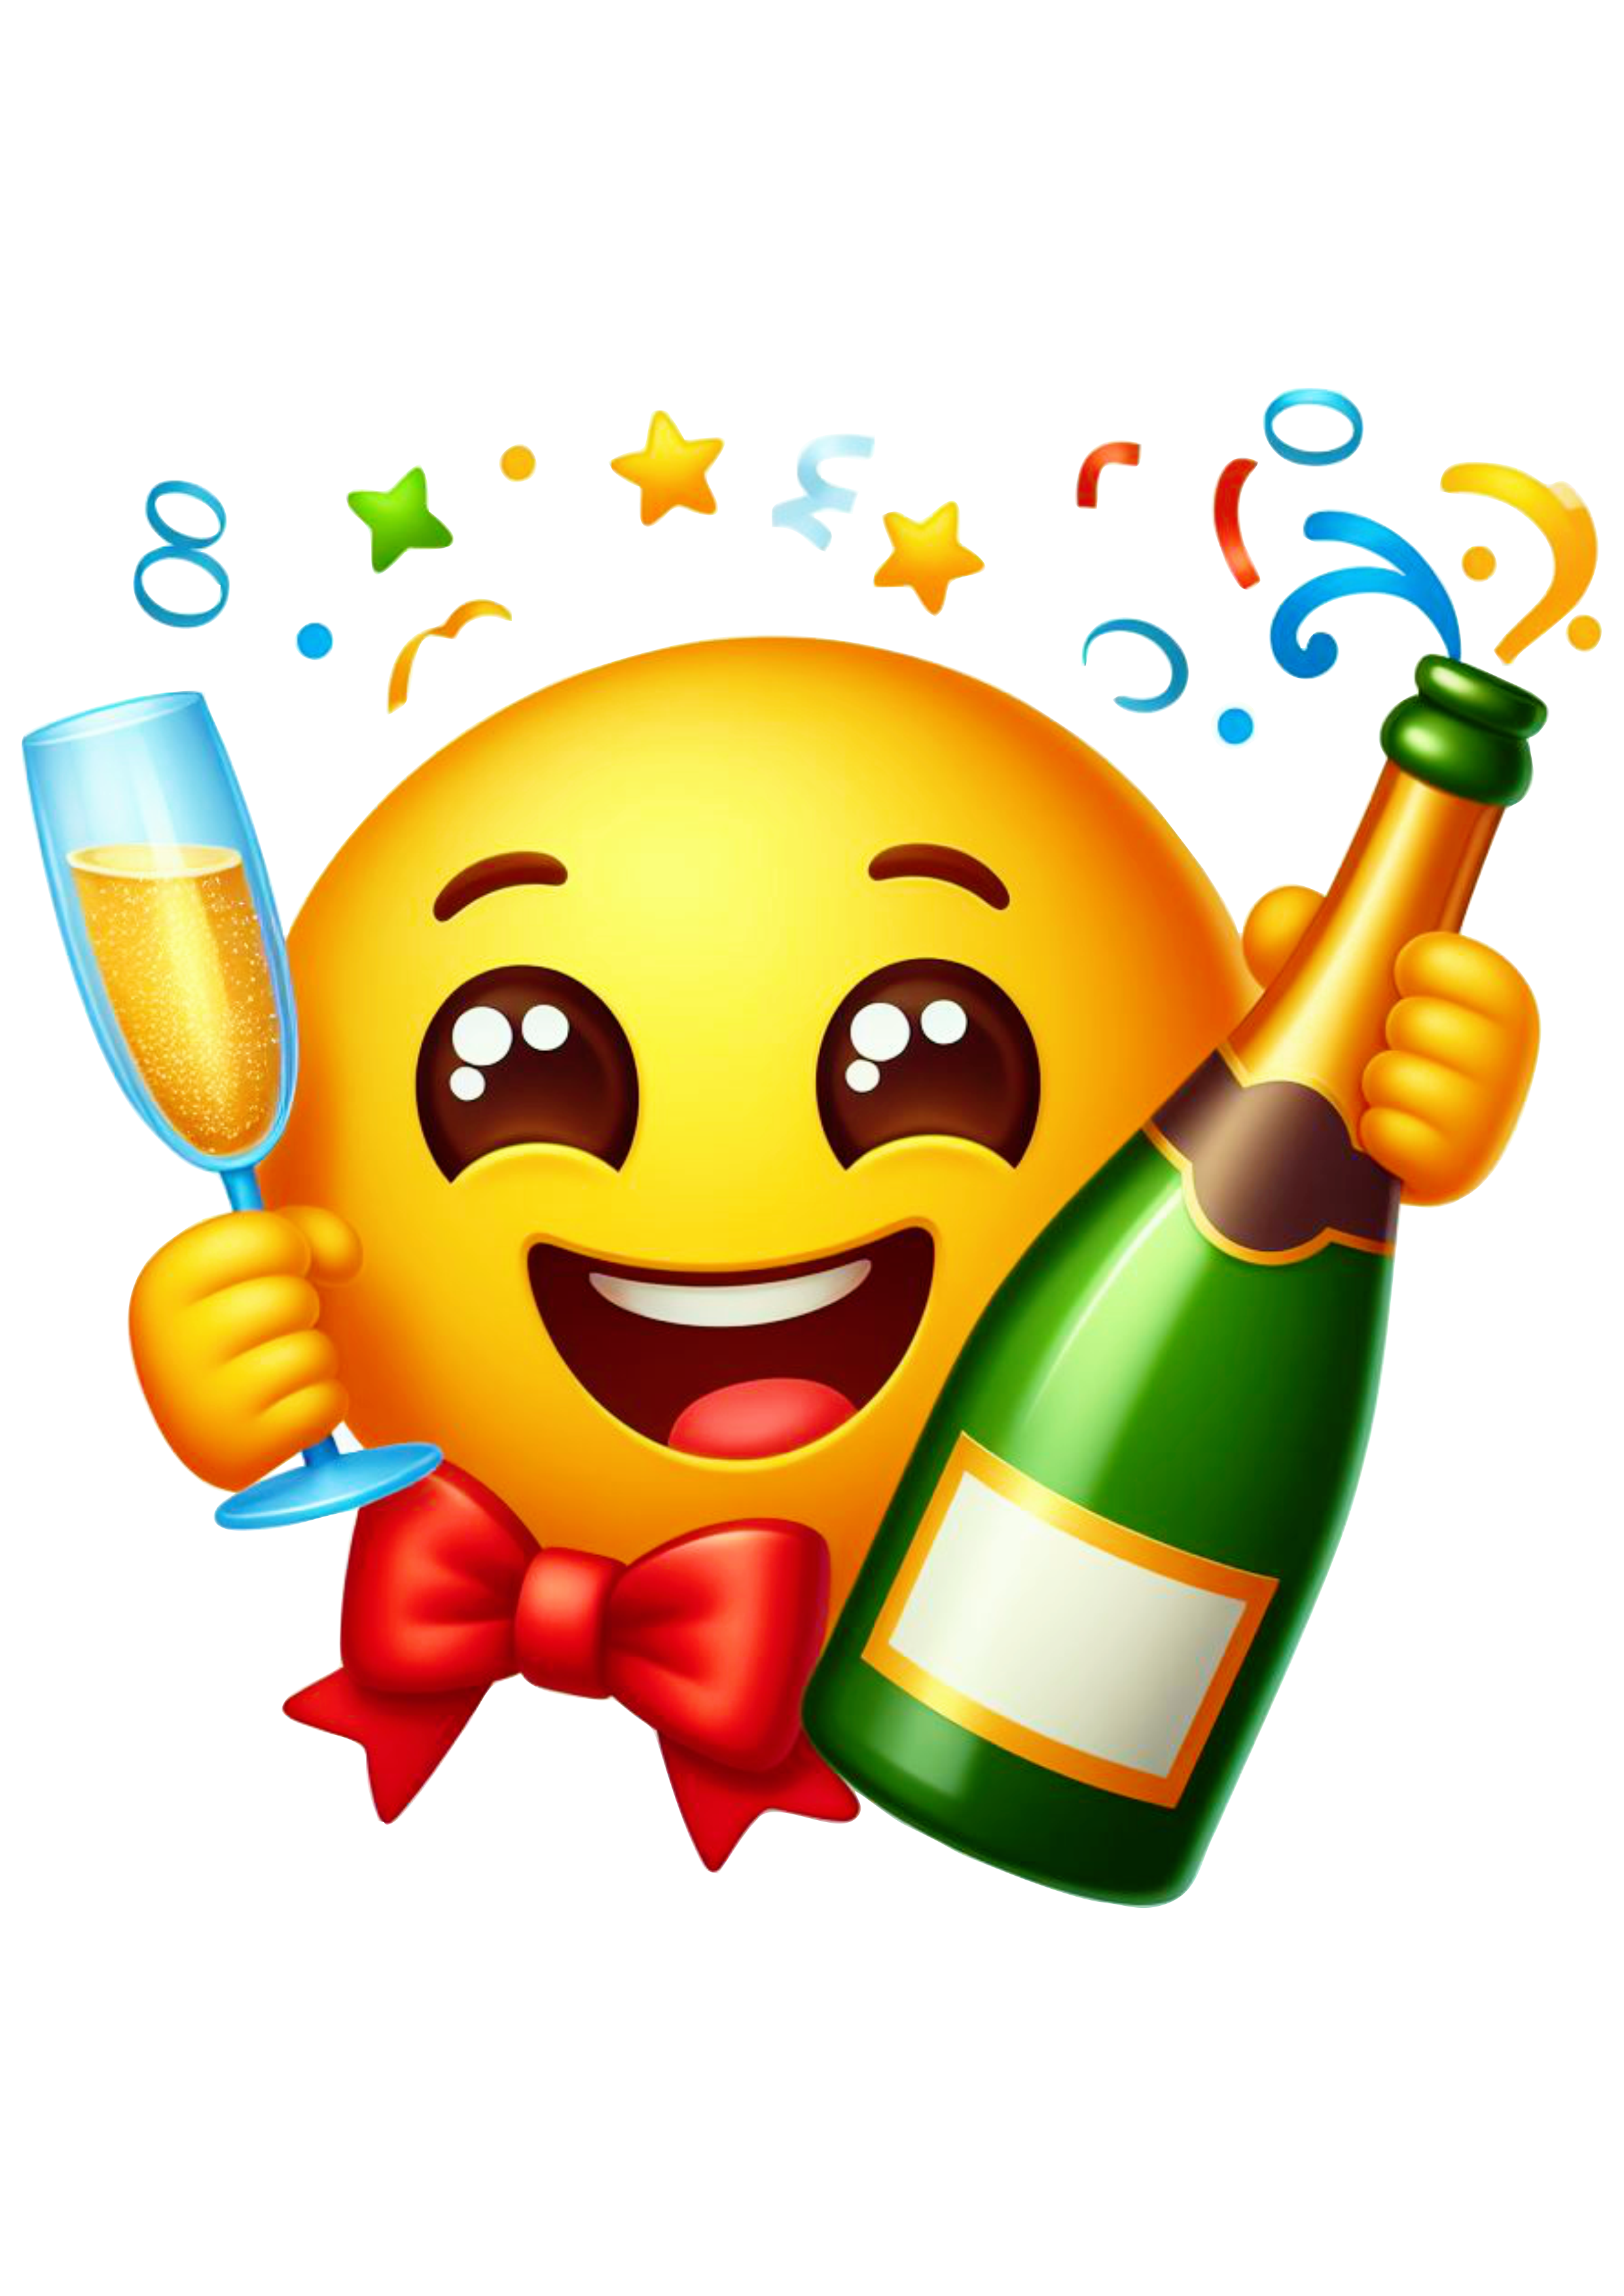 Emoji para whatsapp tomando champanhe feliz ano novo engraçado show da virada happy new year fundo transparente png